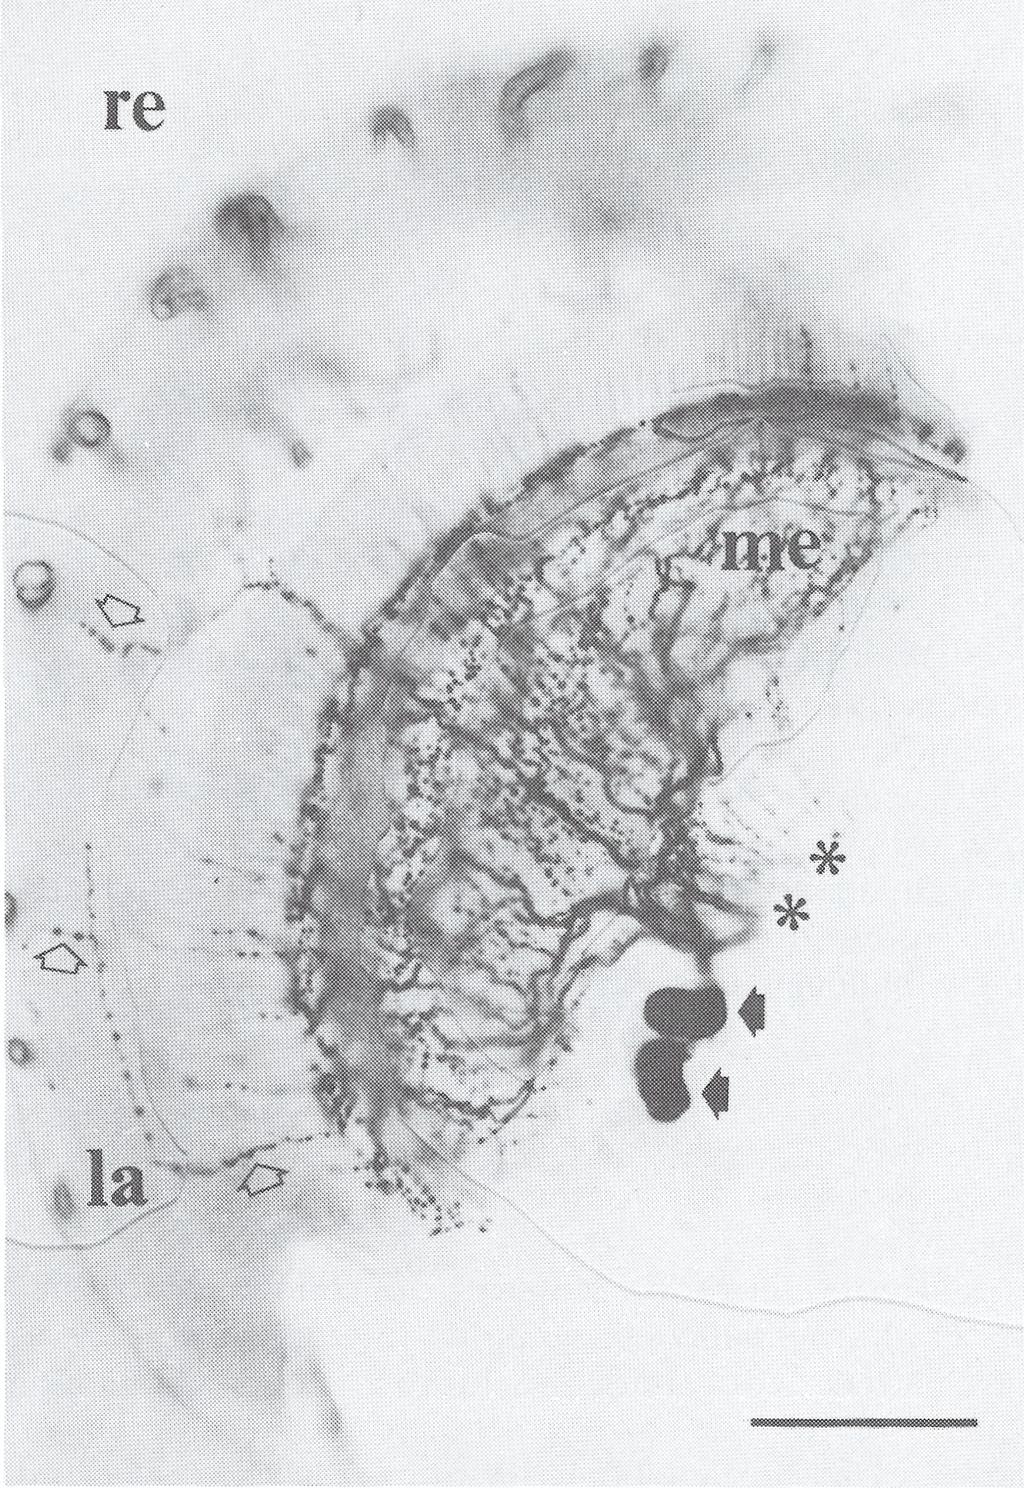 Neurony te wysyłają również aksony do przeciwległej medulla, więc część włókien widocznych na zdjęciu w medulla pochodzi z neuronów położonych w przeciwległej medulla.